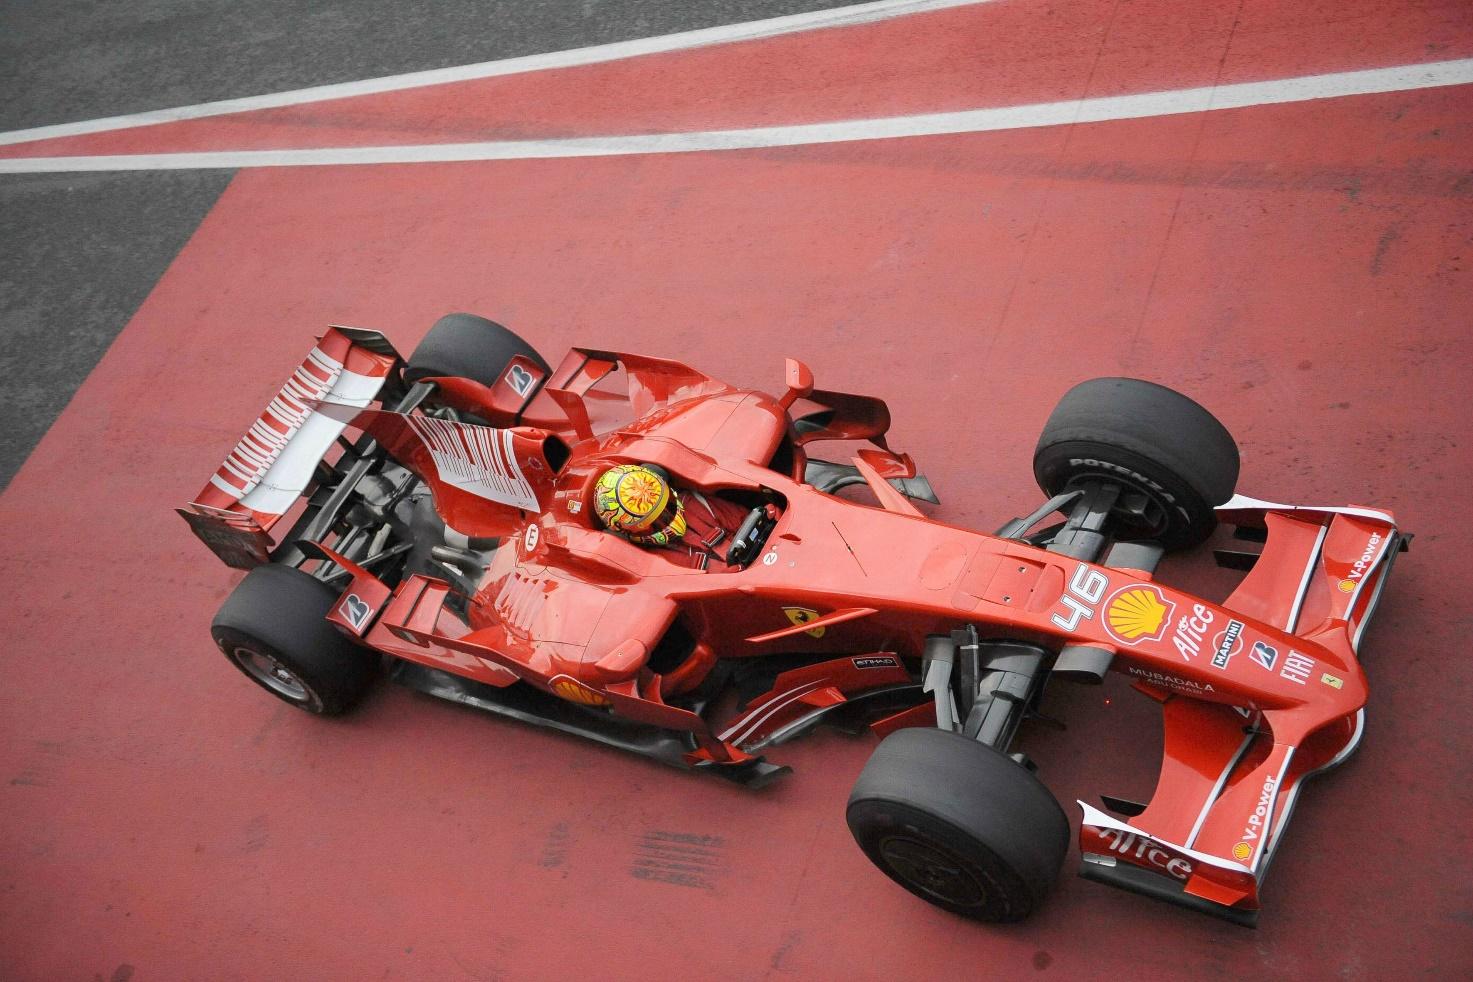 Valentino Rossi driving a Ferrari.